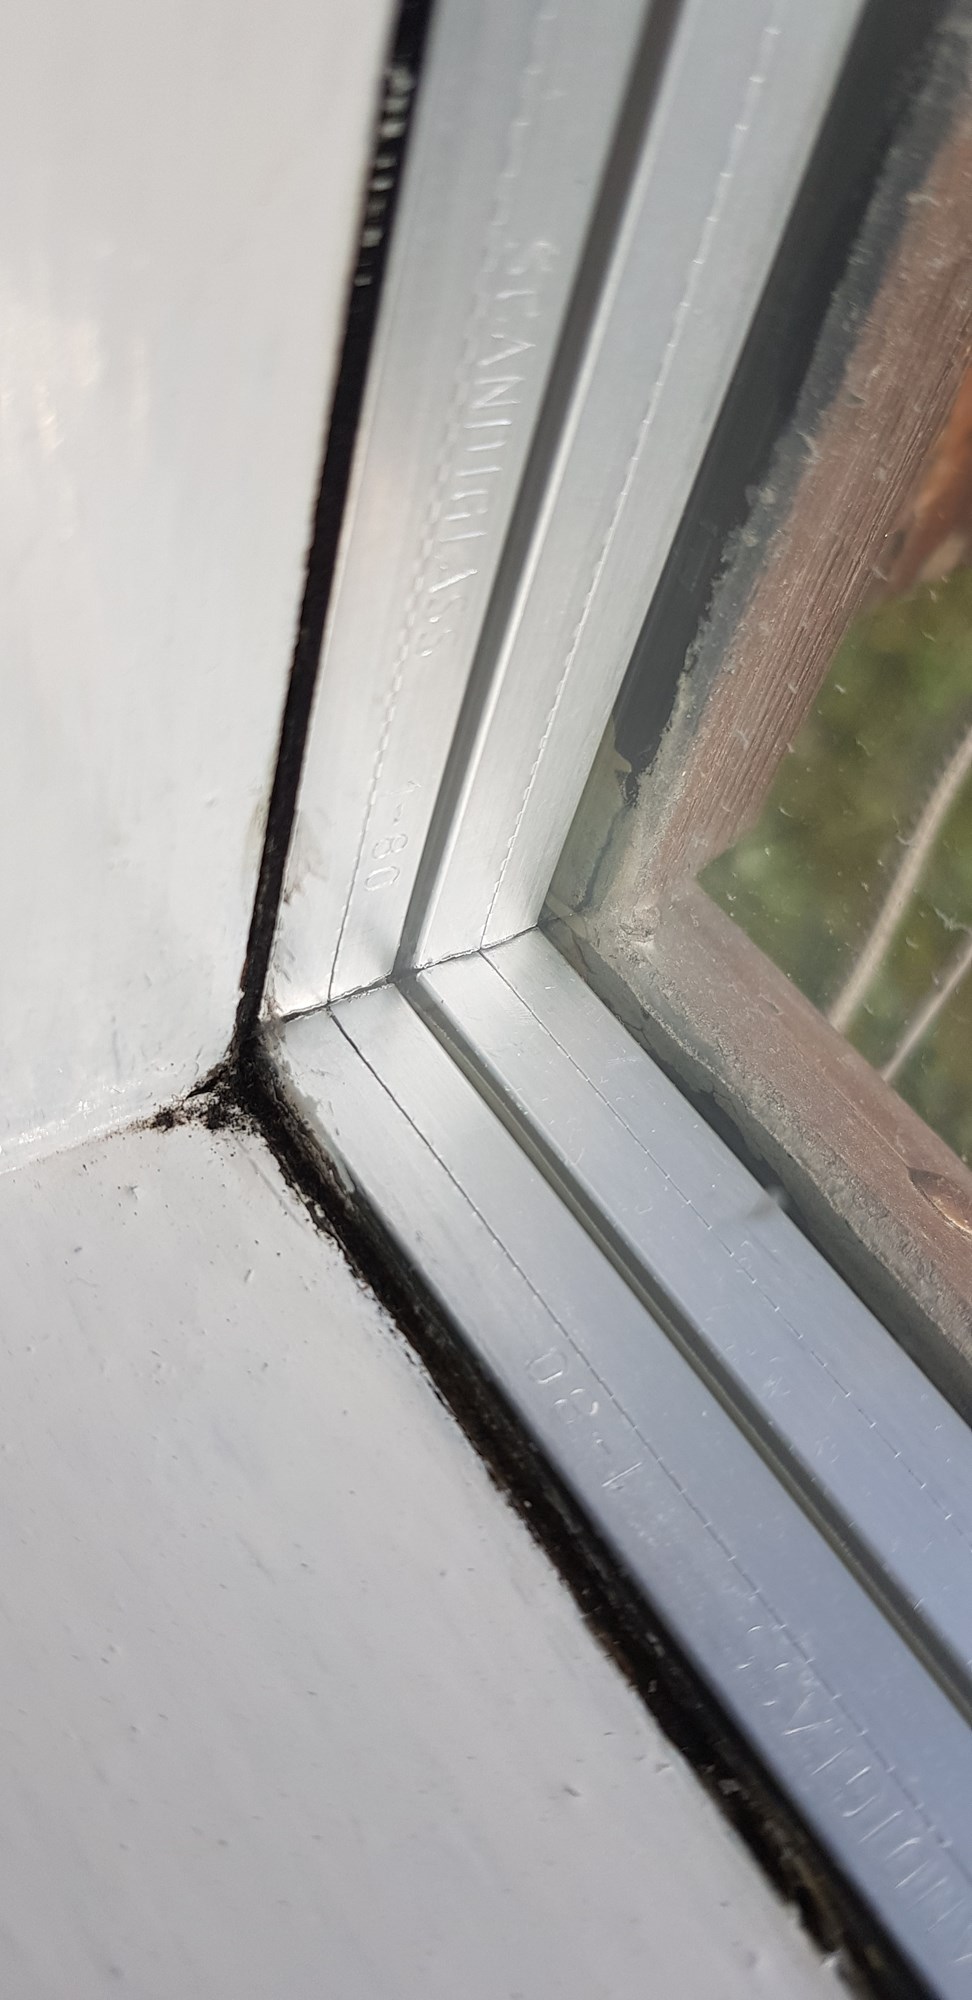 Er dette vinduskitt med asbest i? - 20190731_095213.jpg - Emmylou91